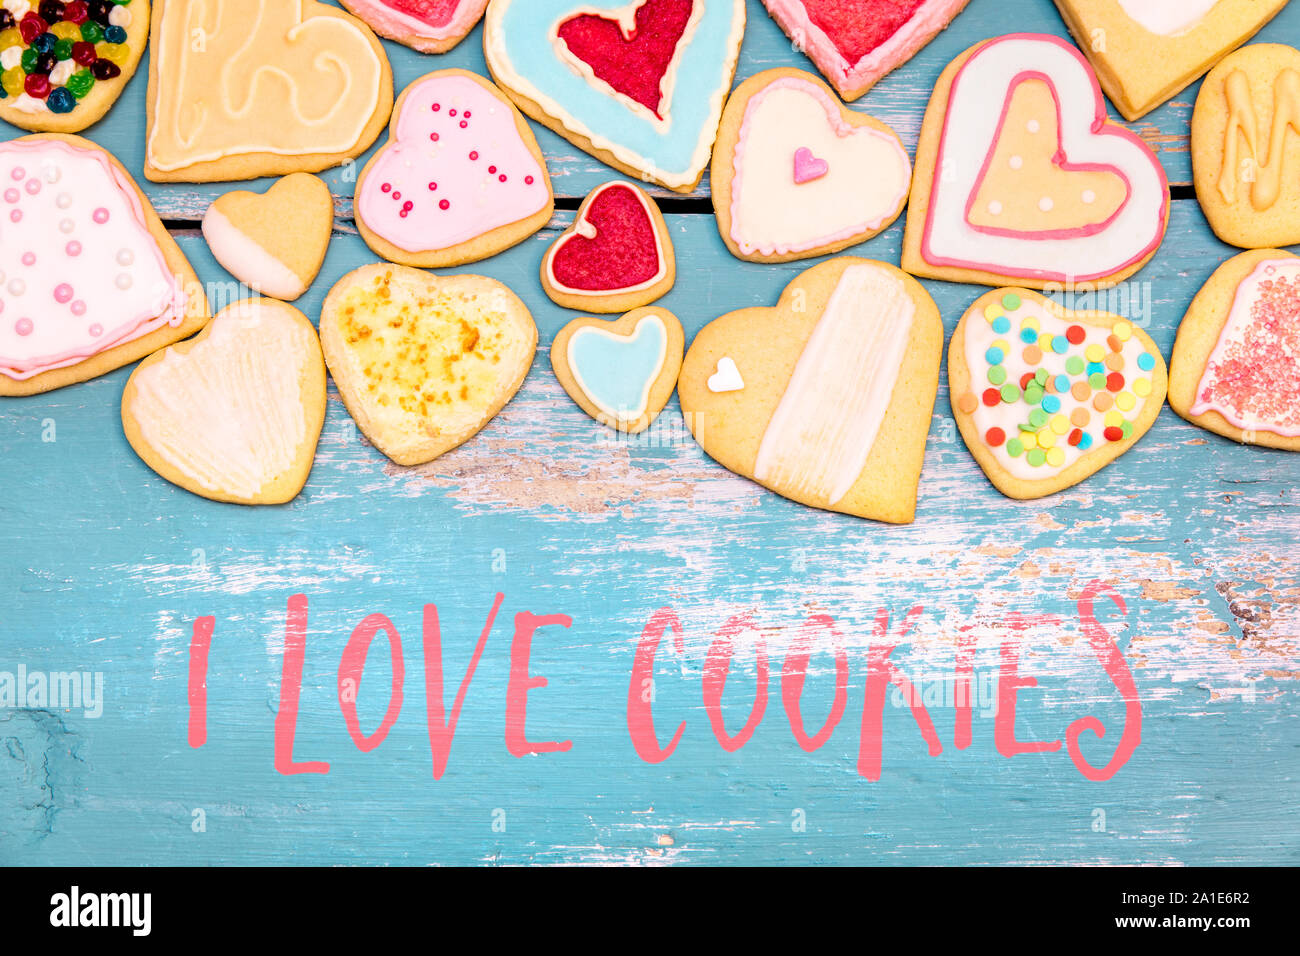 Les cookies en forme de coeur avec le glaçage et le glaçage royal, texte anglais J'aime les cookies Banque D'Images